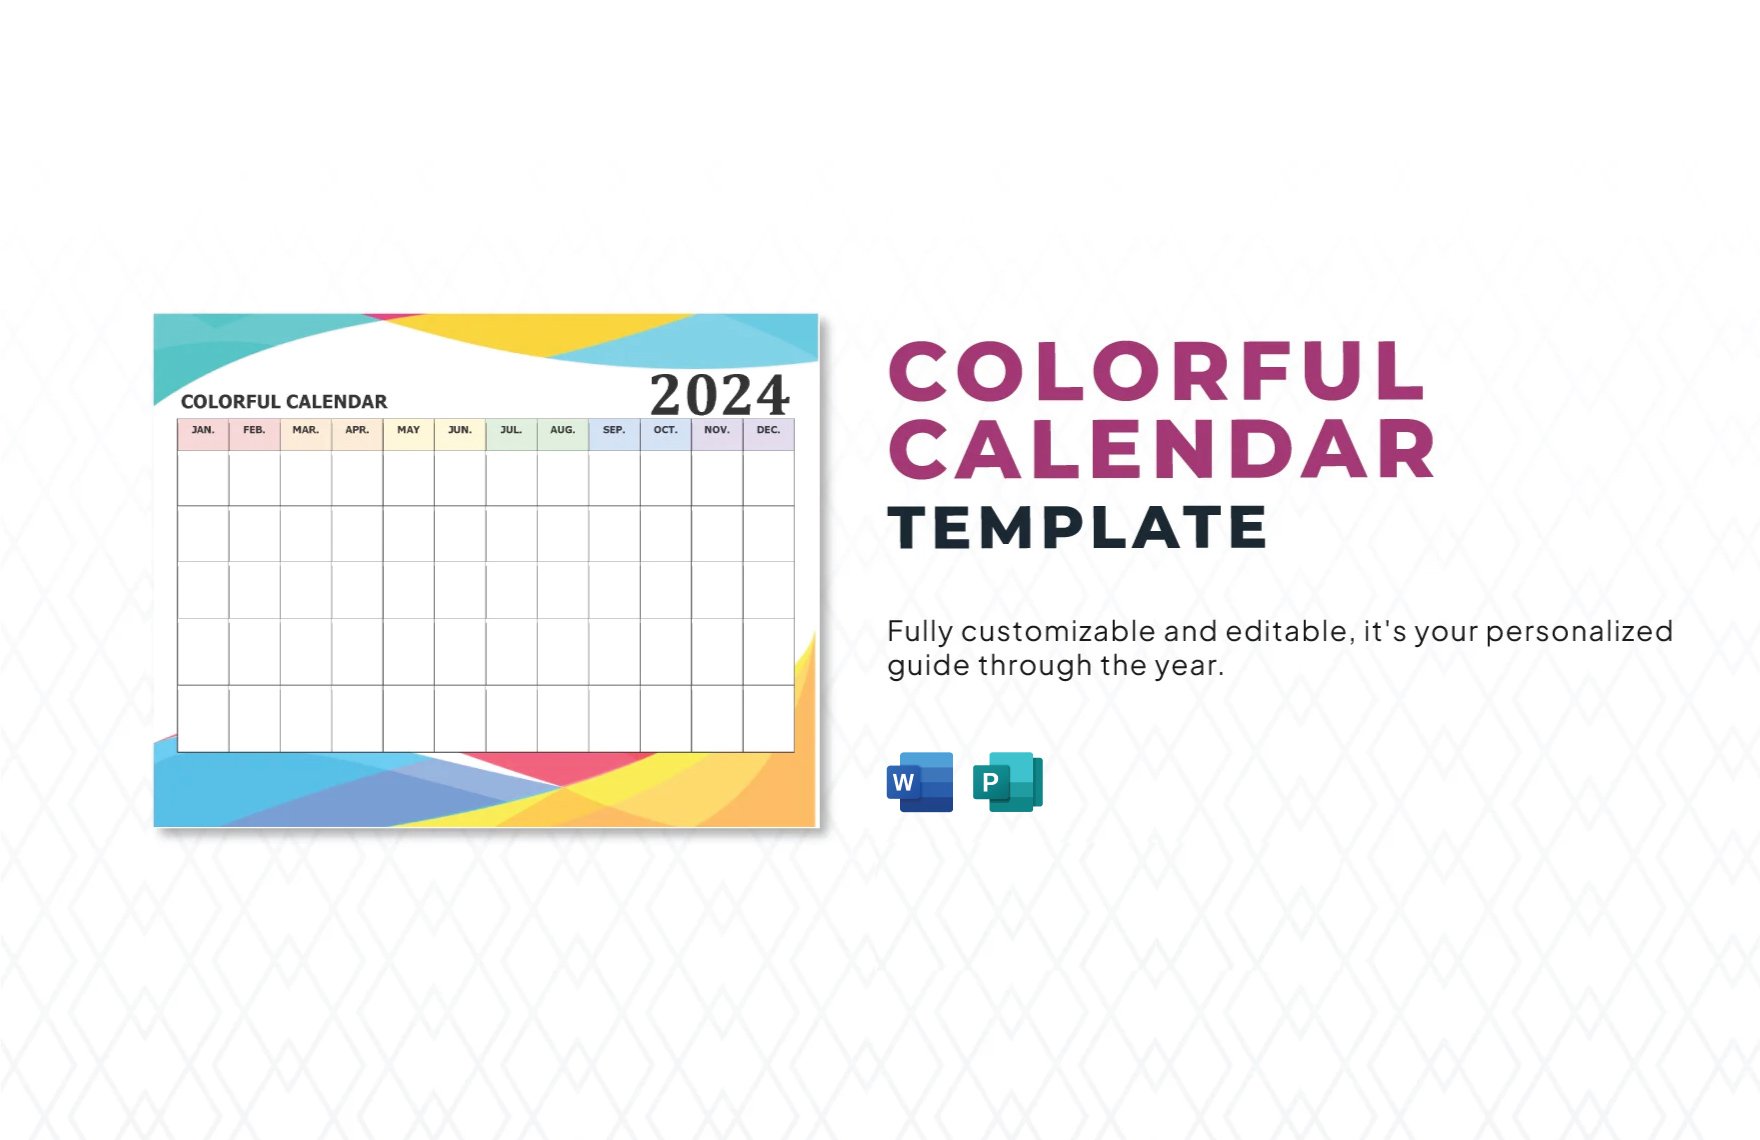 Colorful Calendar Template